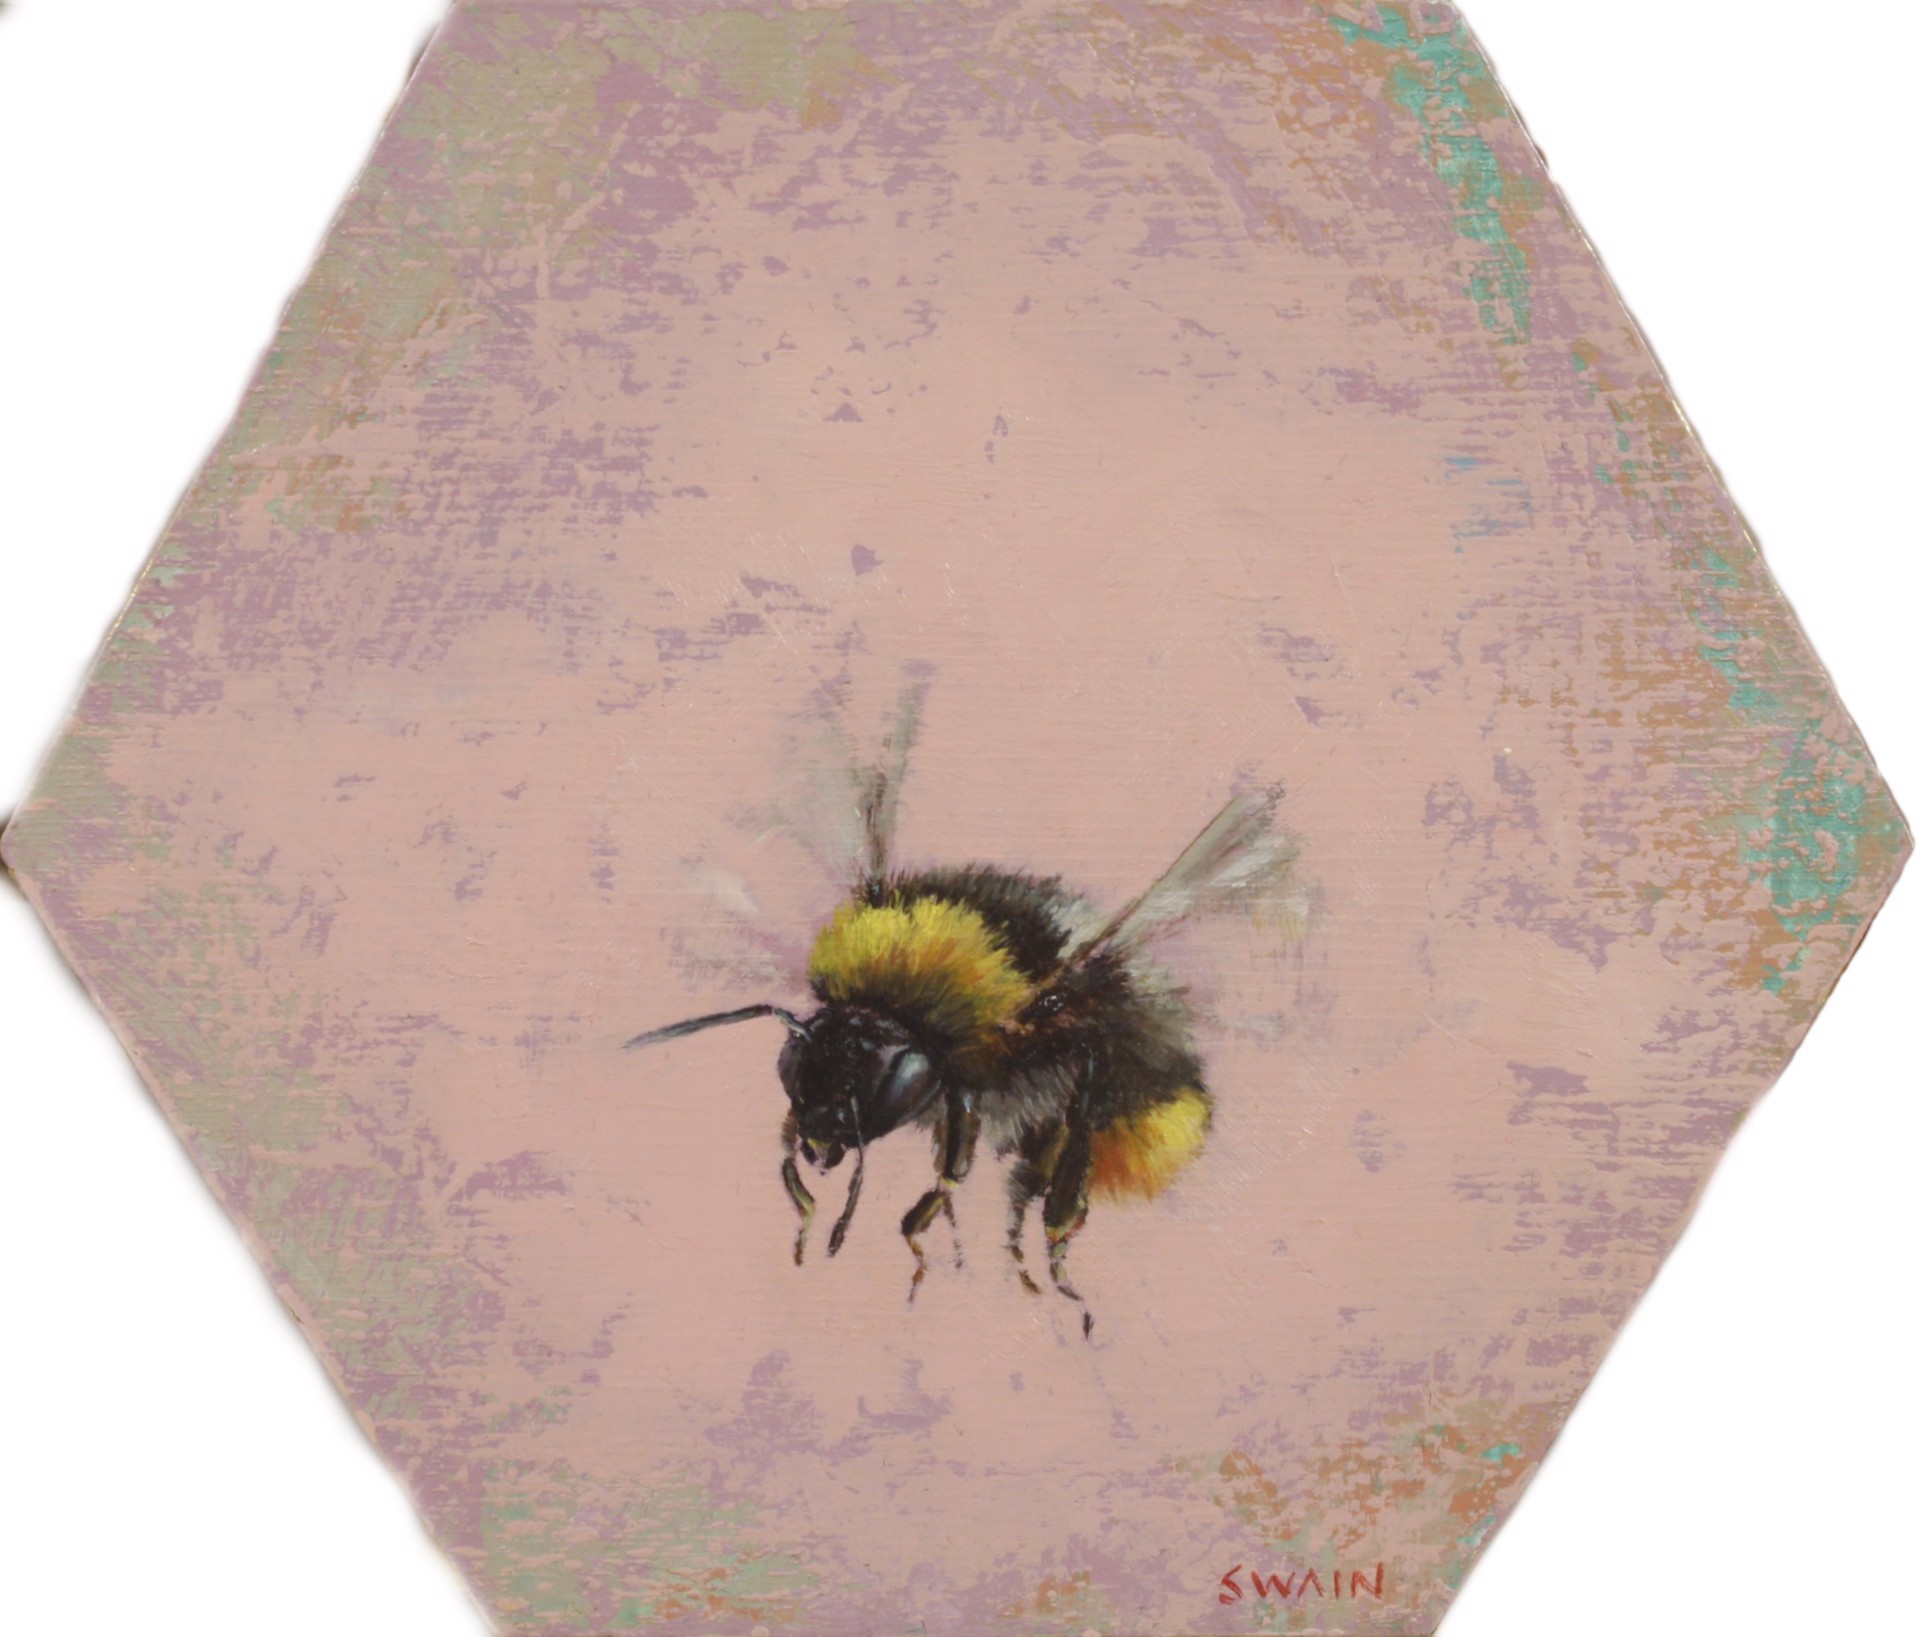 Bee 1 by Tyler Swain